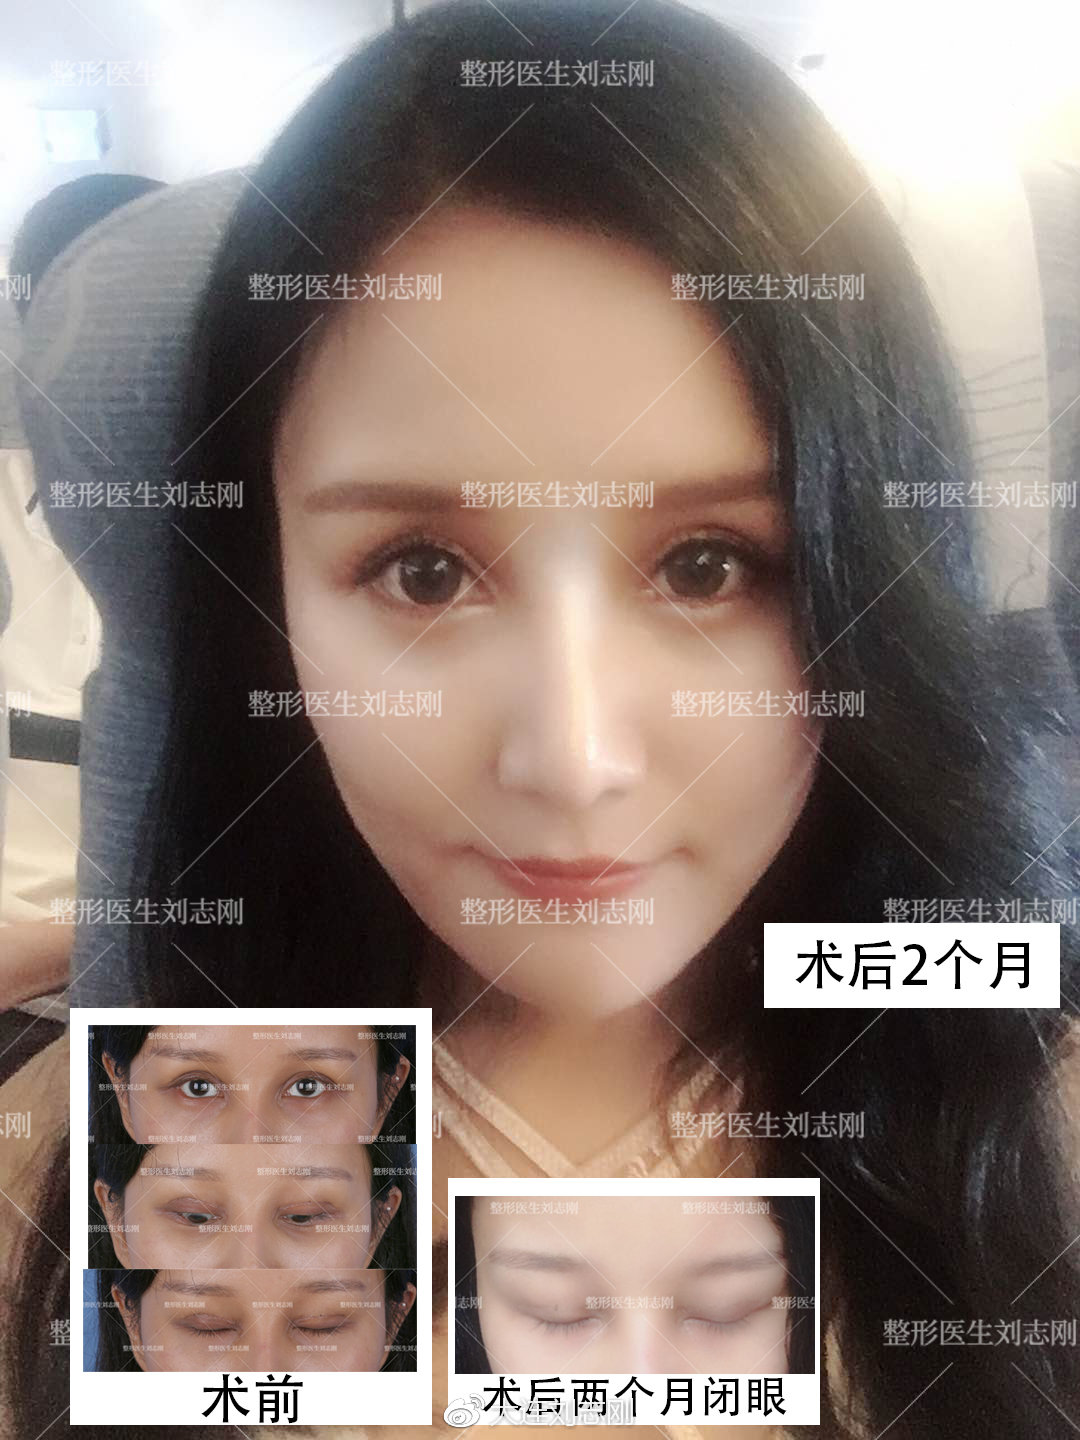 双眼皮专家任召磊和刘志刚谁双眼皮做的好 - 美妆技巧 - 整形医院排行榜